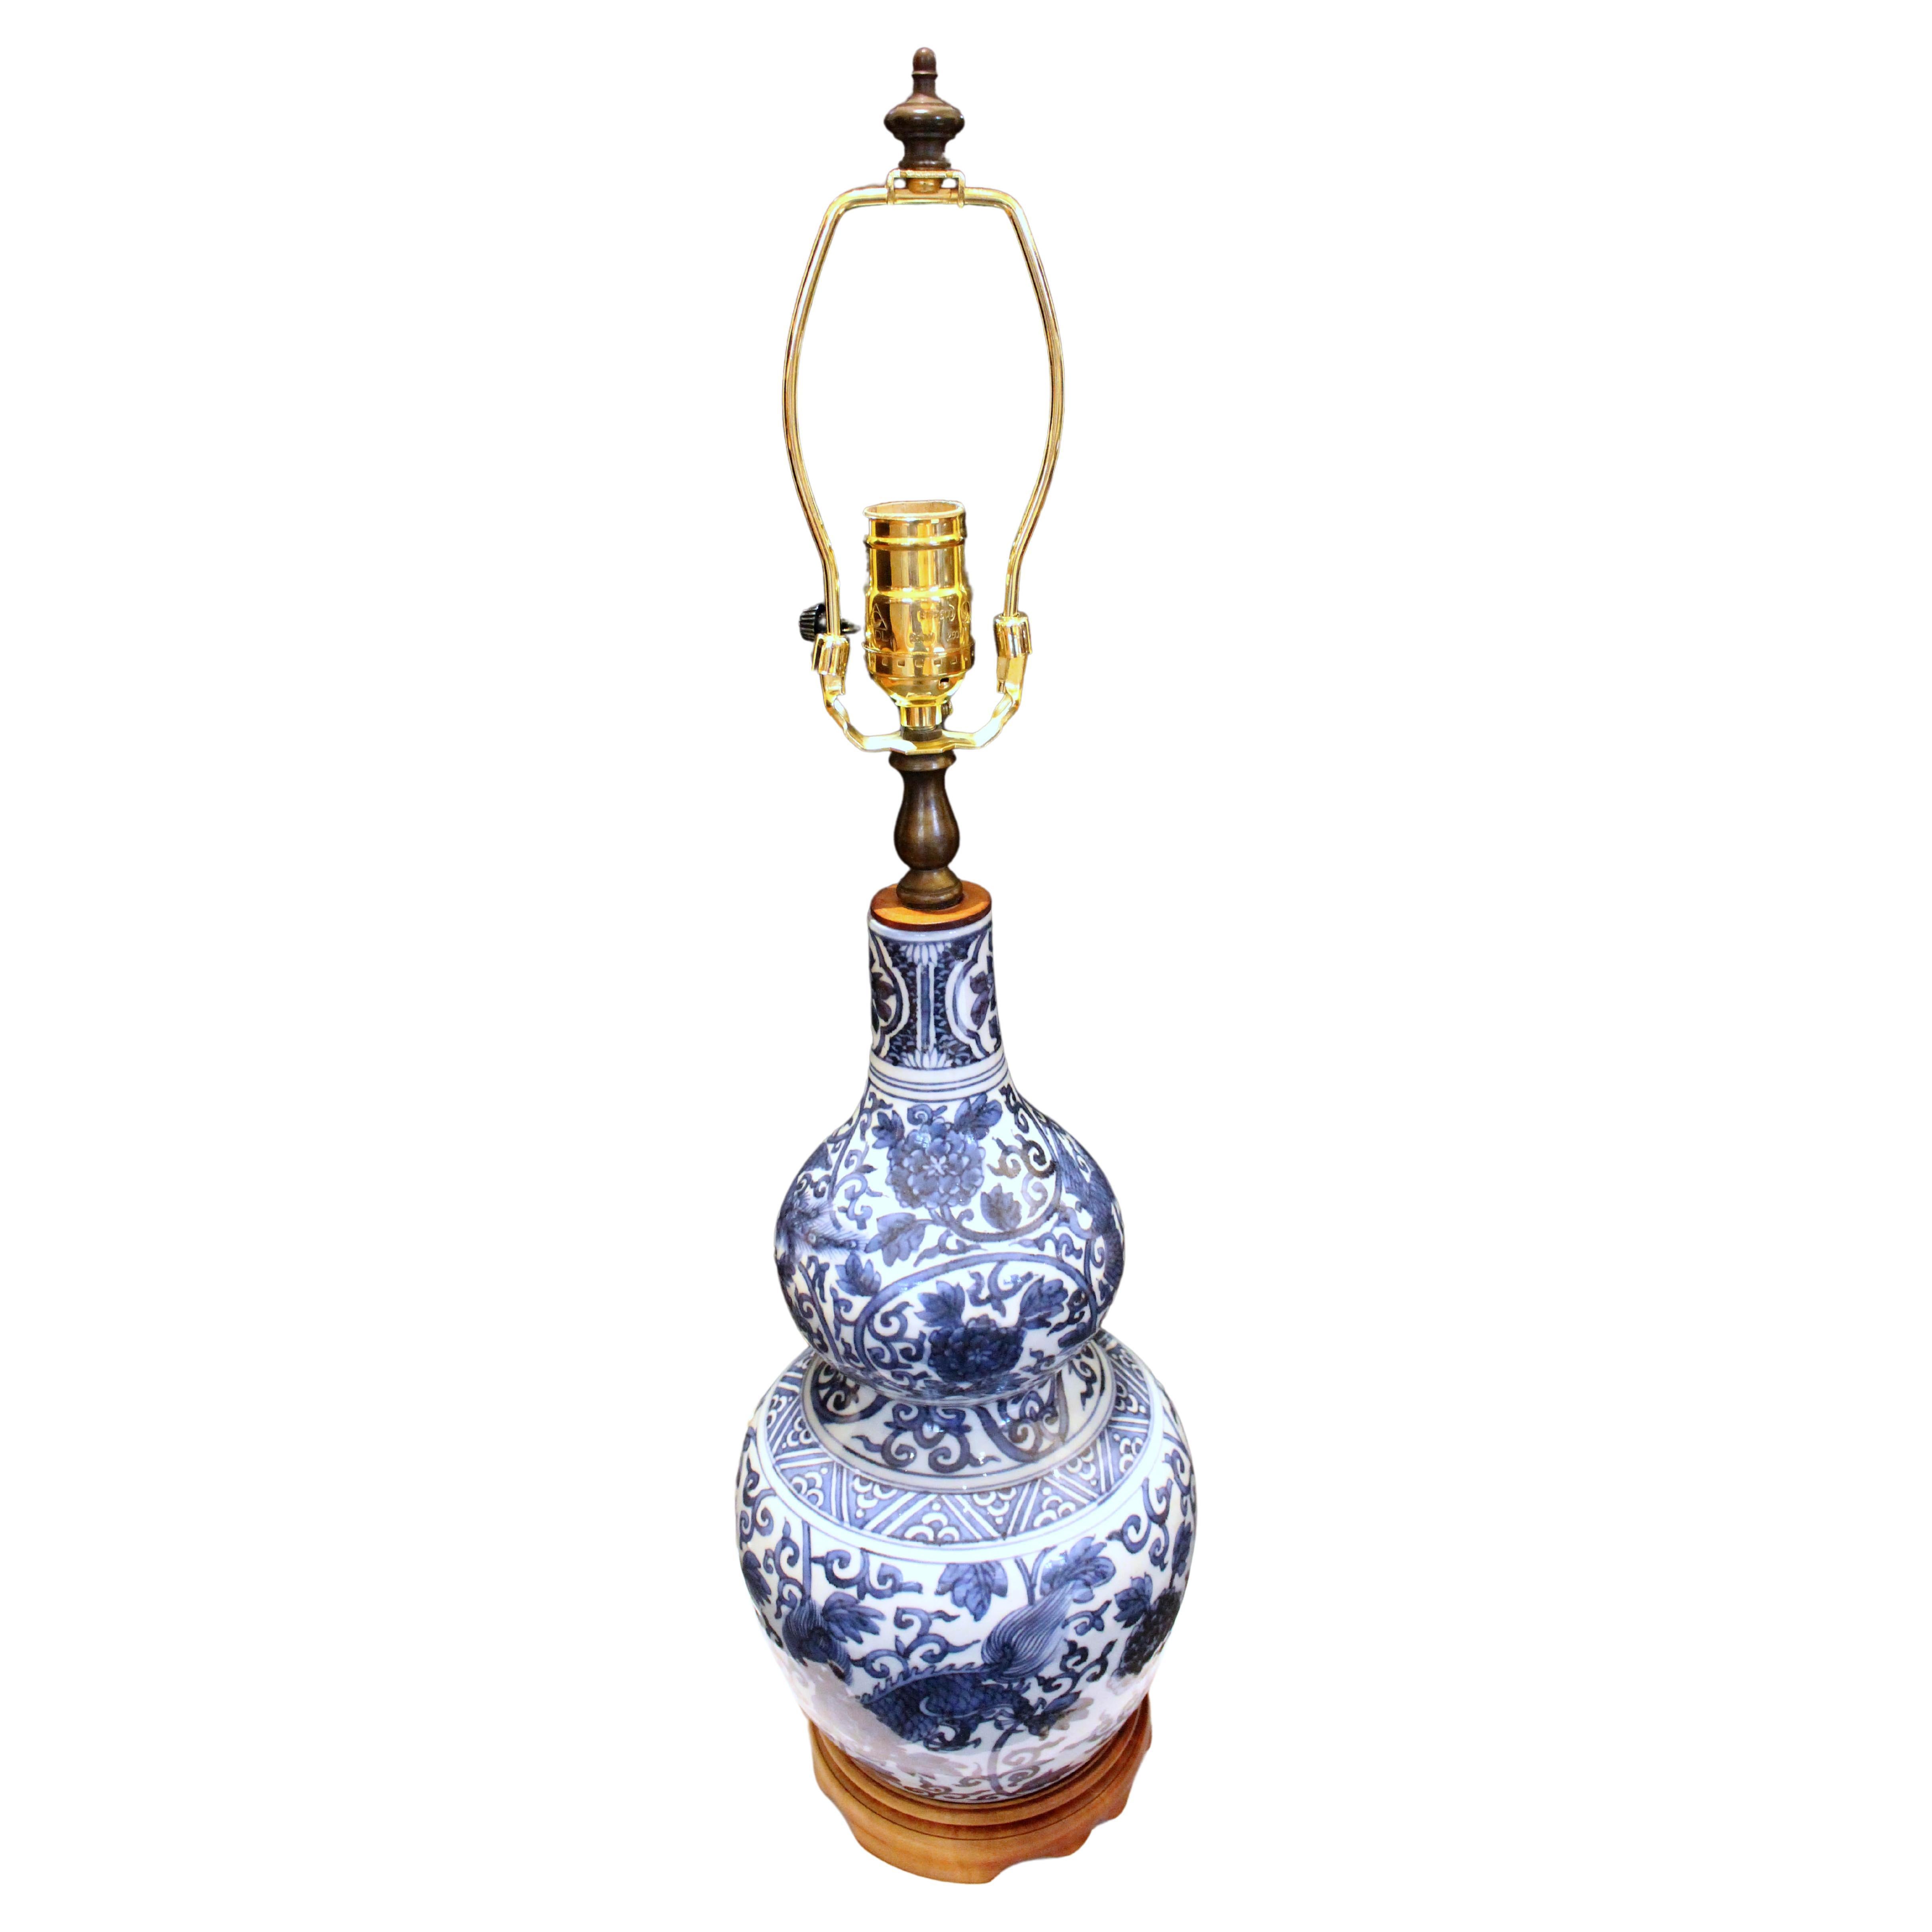 Chinesische blau-weiße Vasenlampe aus der Mitte des späten 19. Jahrhunderts